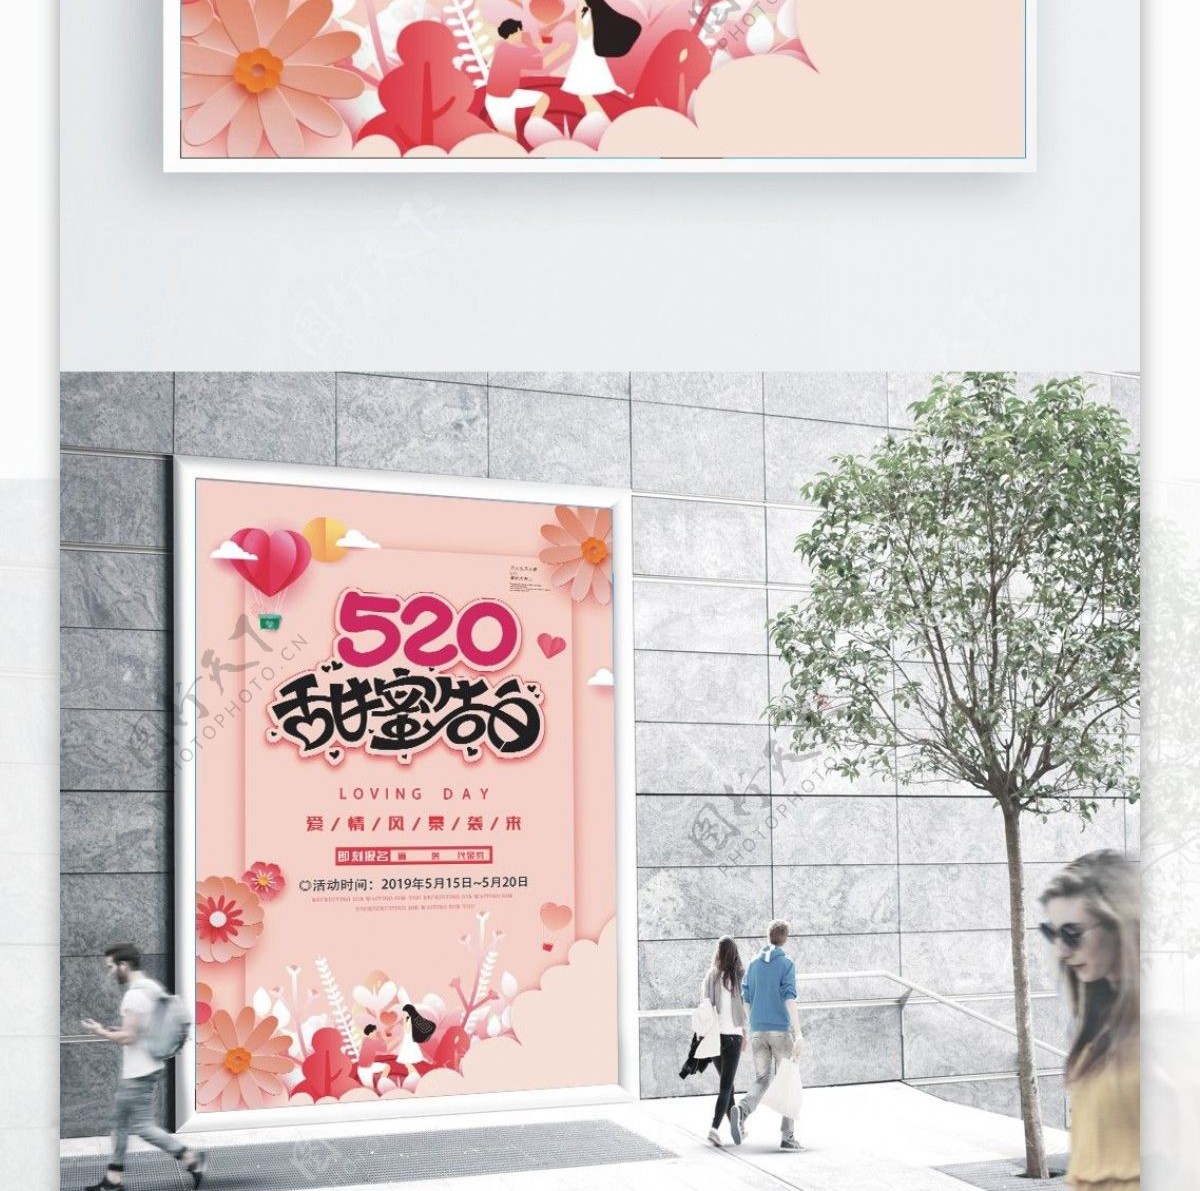 插画纸雕520粉色节日花卉海报